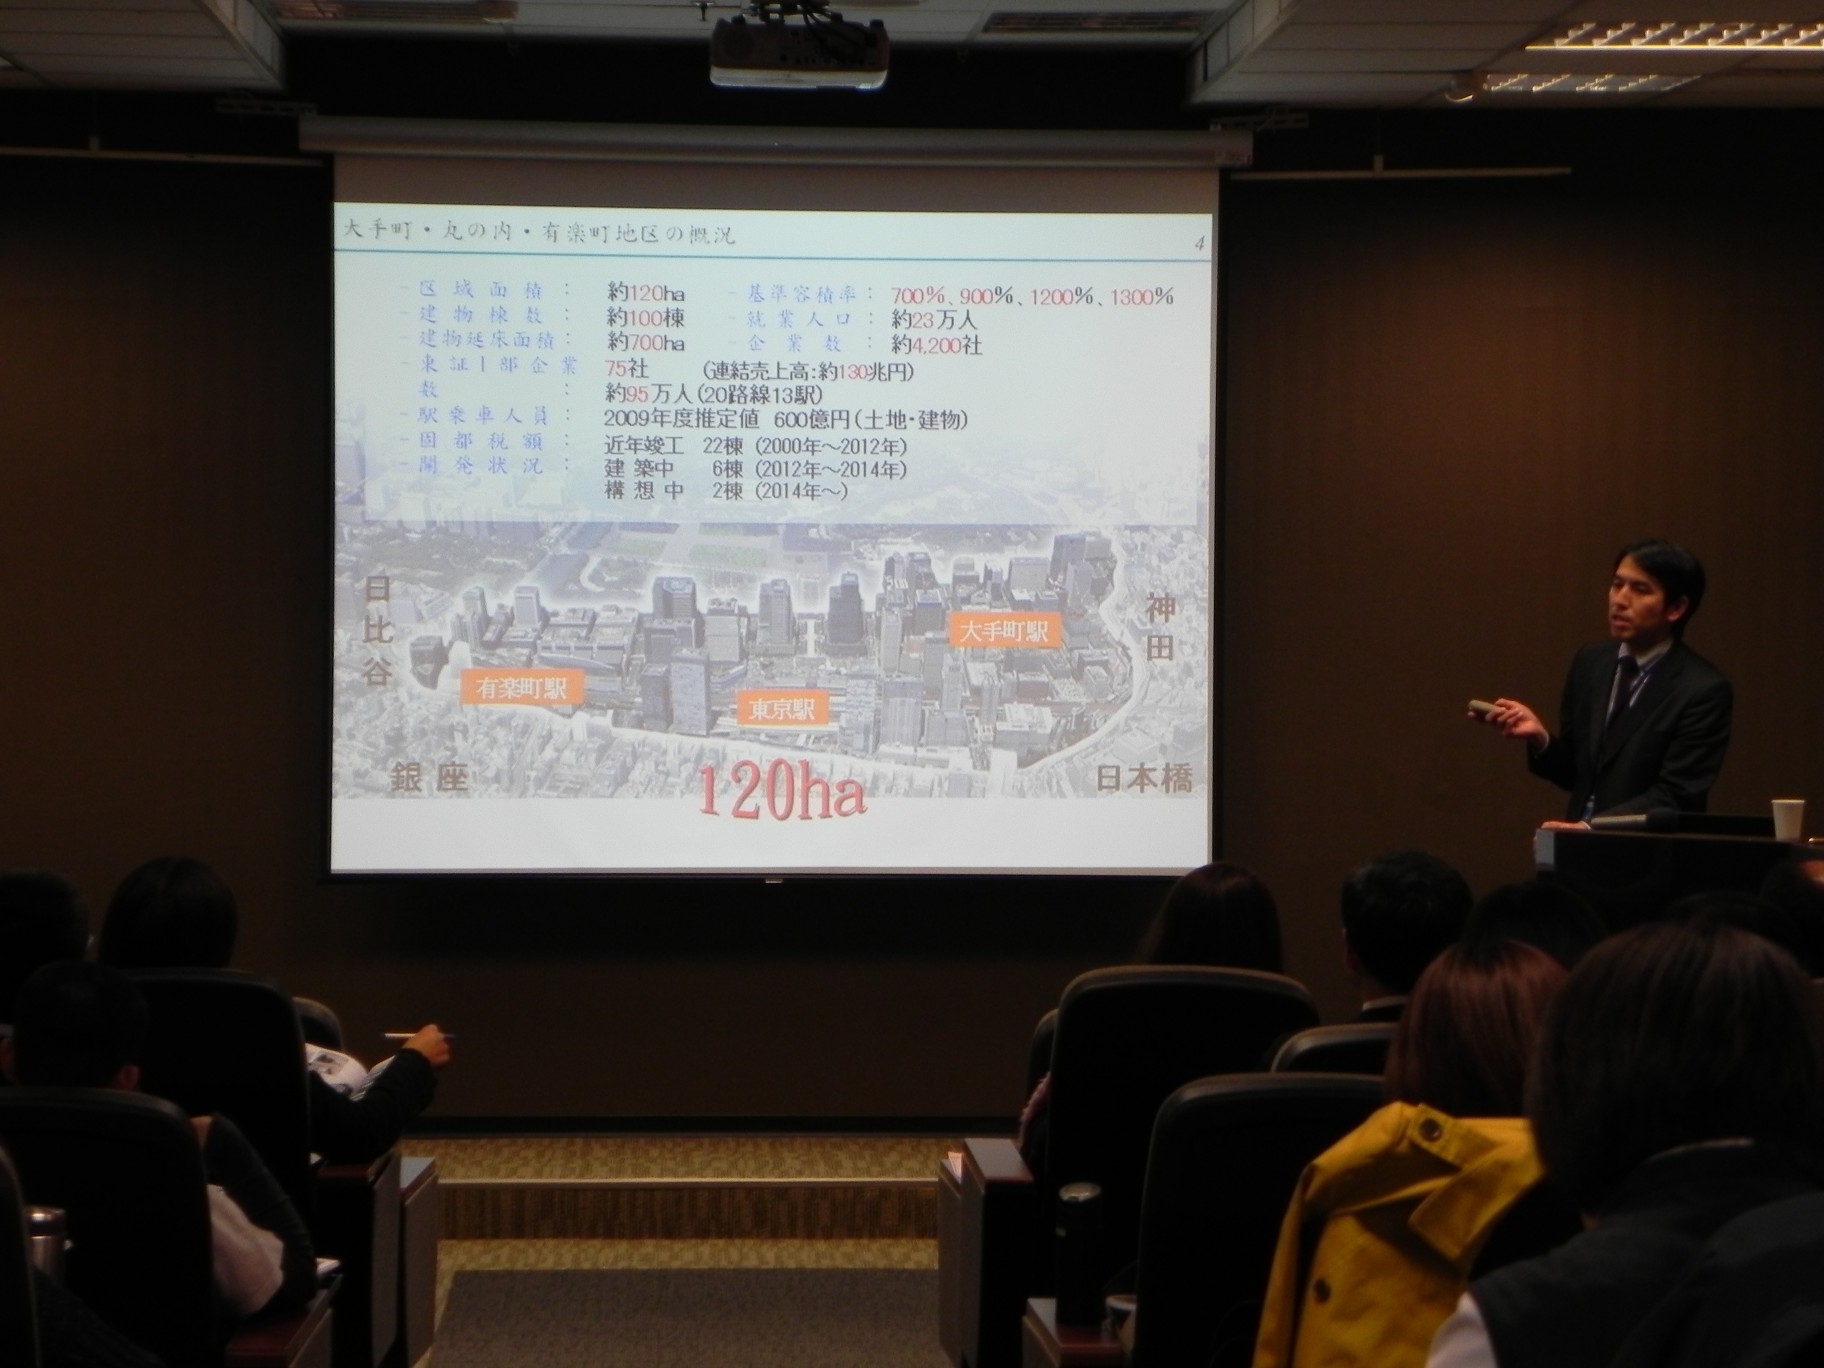 102年11月27日至28日 第30屆中日工程技術研討會(營建組):日本都市再生策略論壇、這是第5張圖片